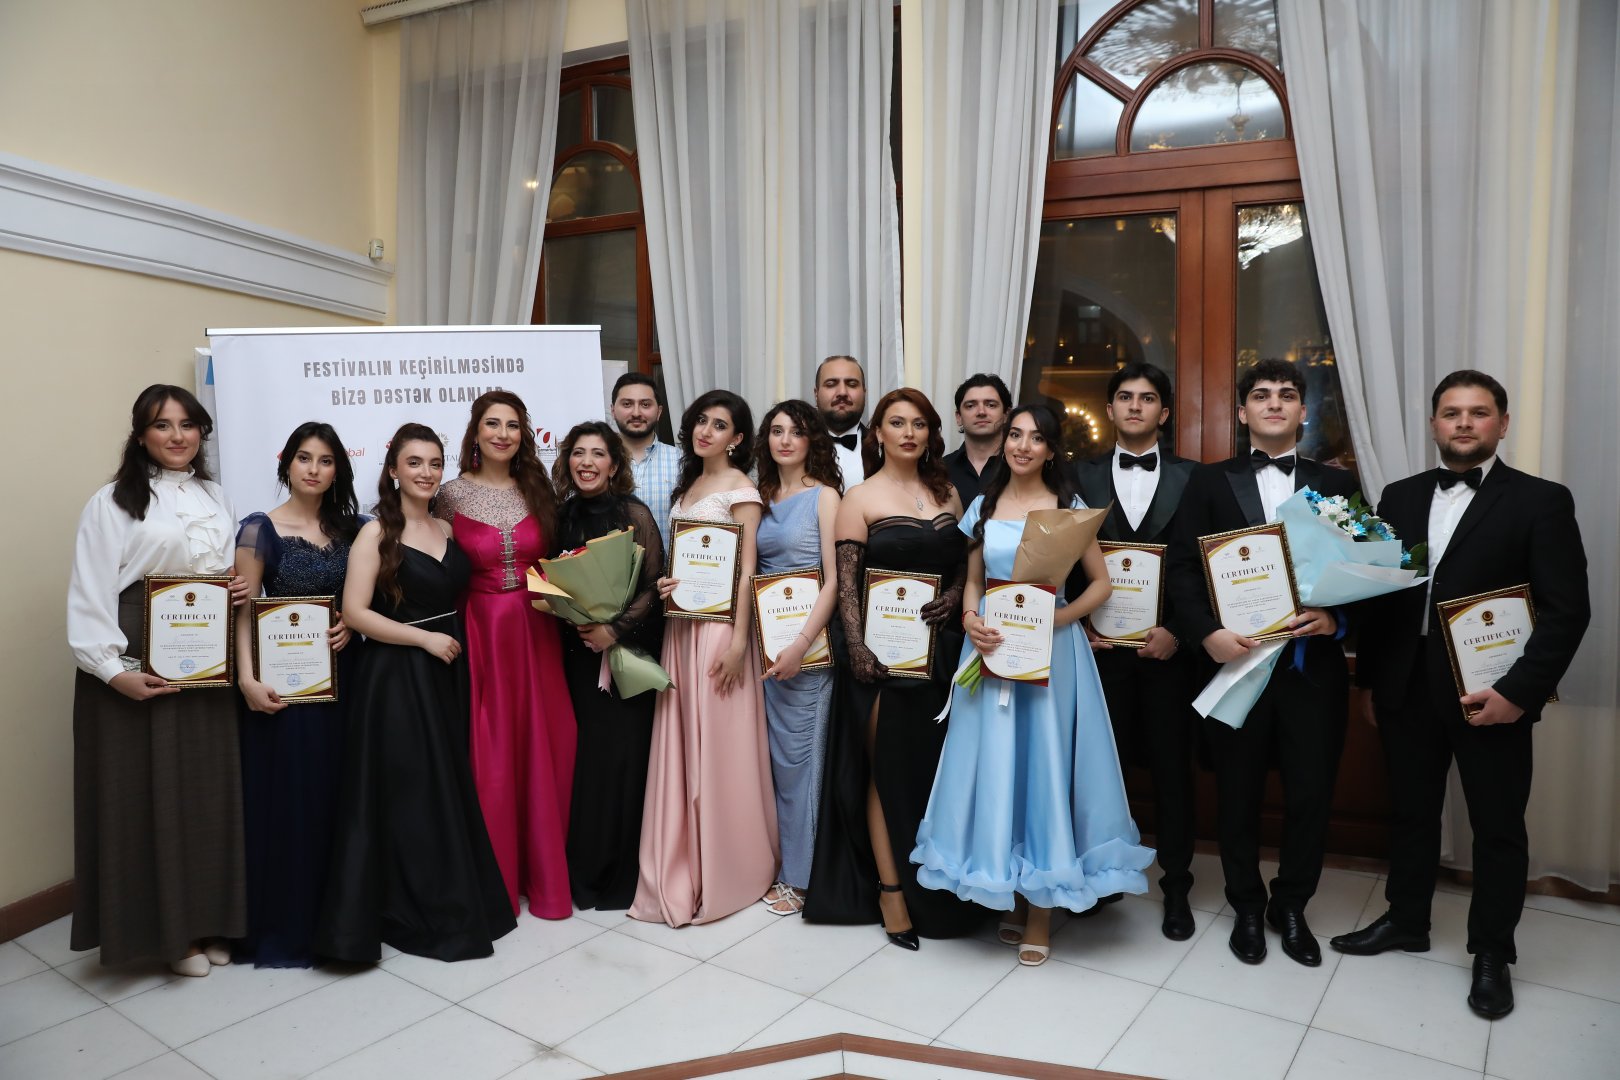 В Баку состоялся концерт "Молодые оперные звезды" в рамках  Международного  фестиваля Фидан Гаджиевой (ФОТО)